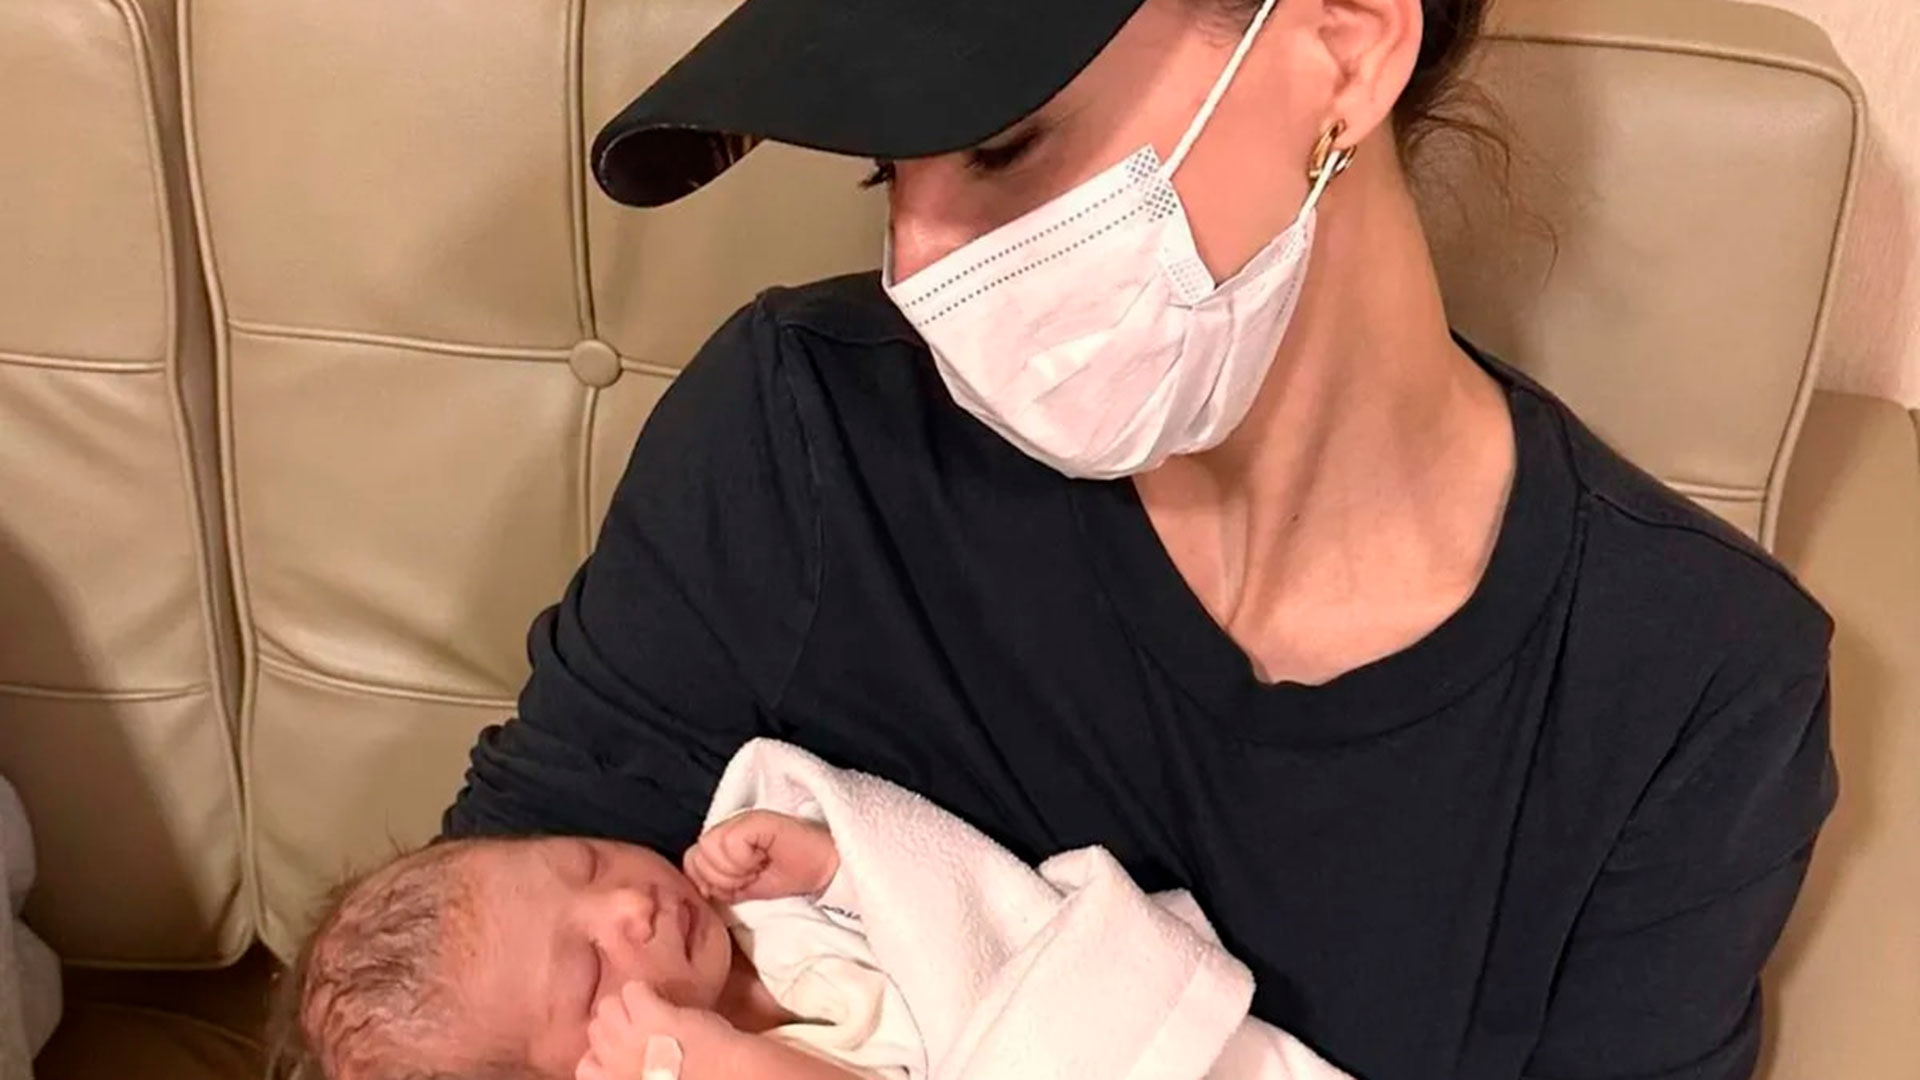 La China Suárez se convirtió en tía y compartió la primera foto de su sobrina: “Ponjita amada”